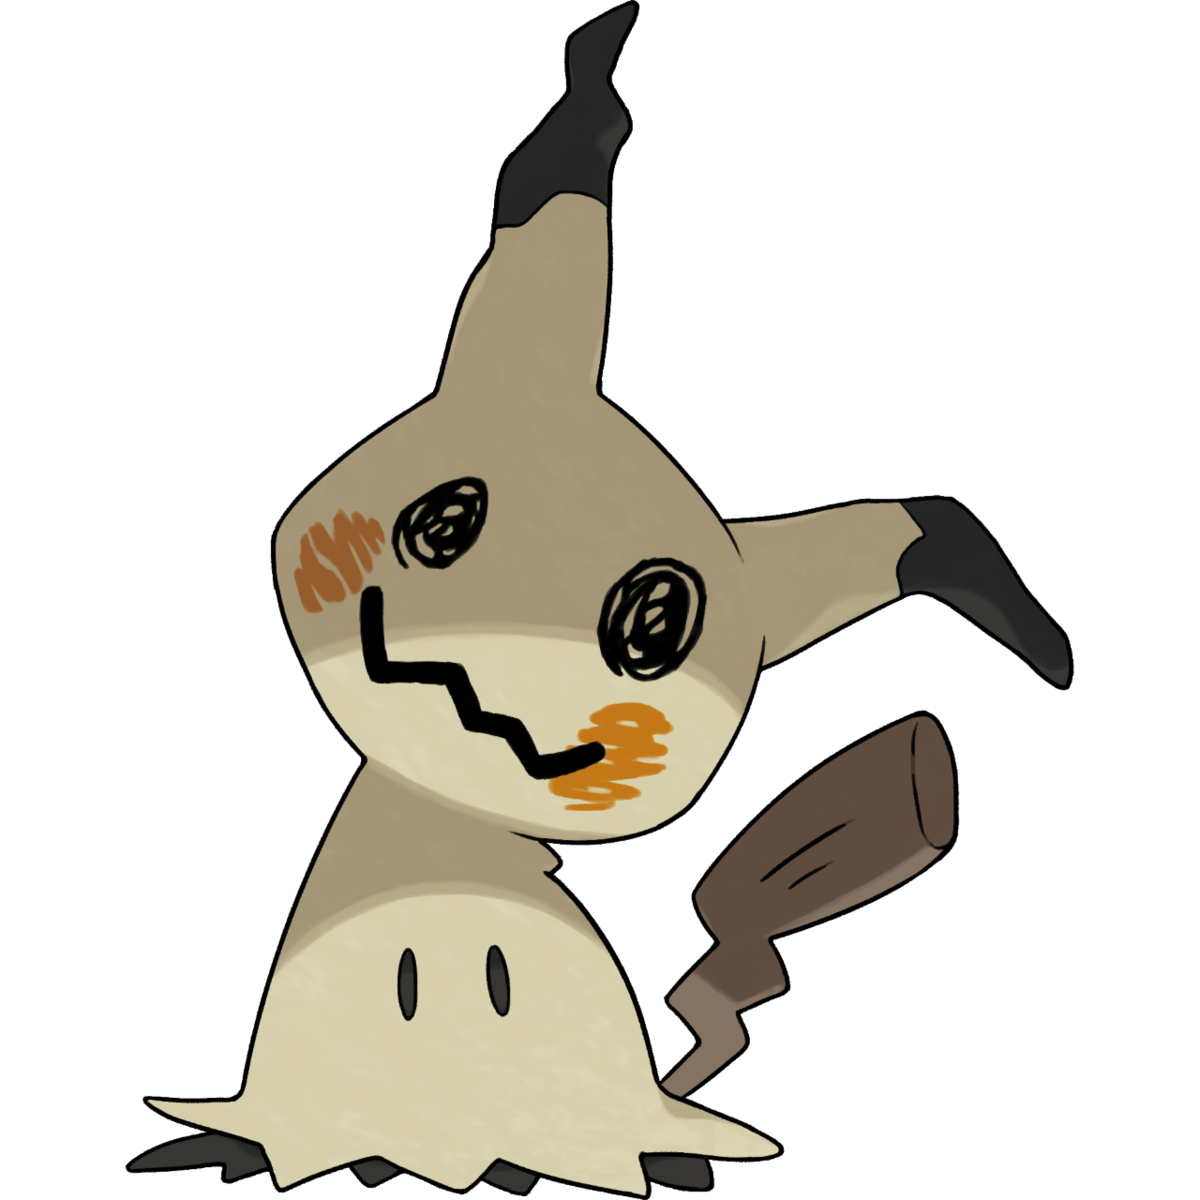 Mimikyu Pokemon PNG Background Isolated Image